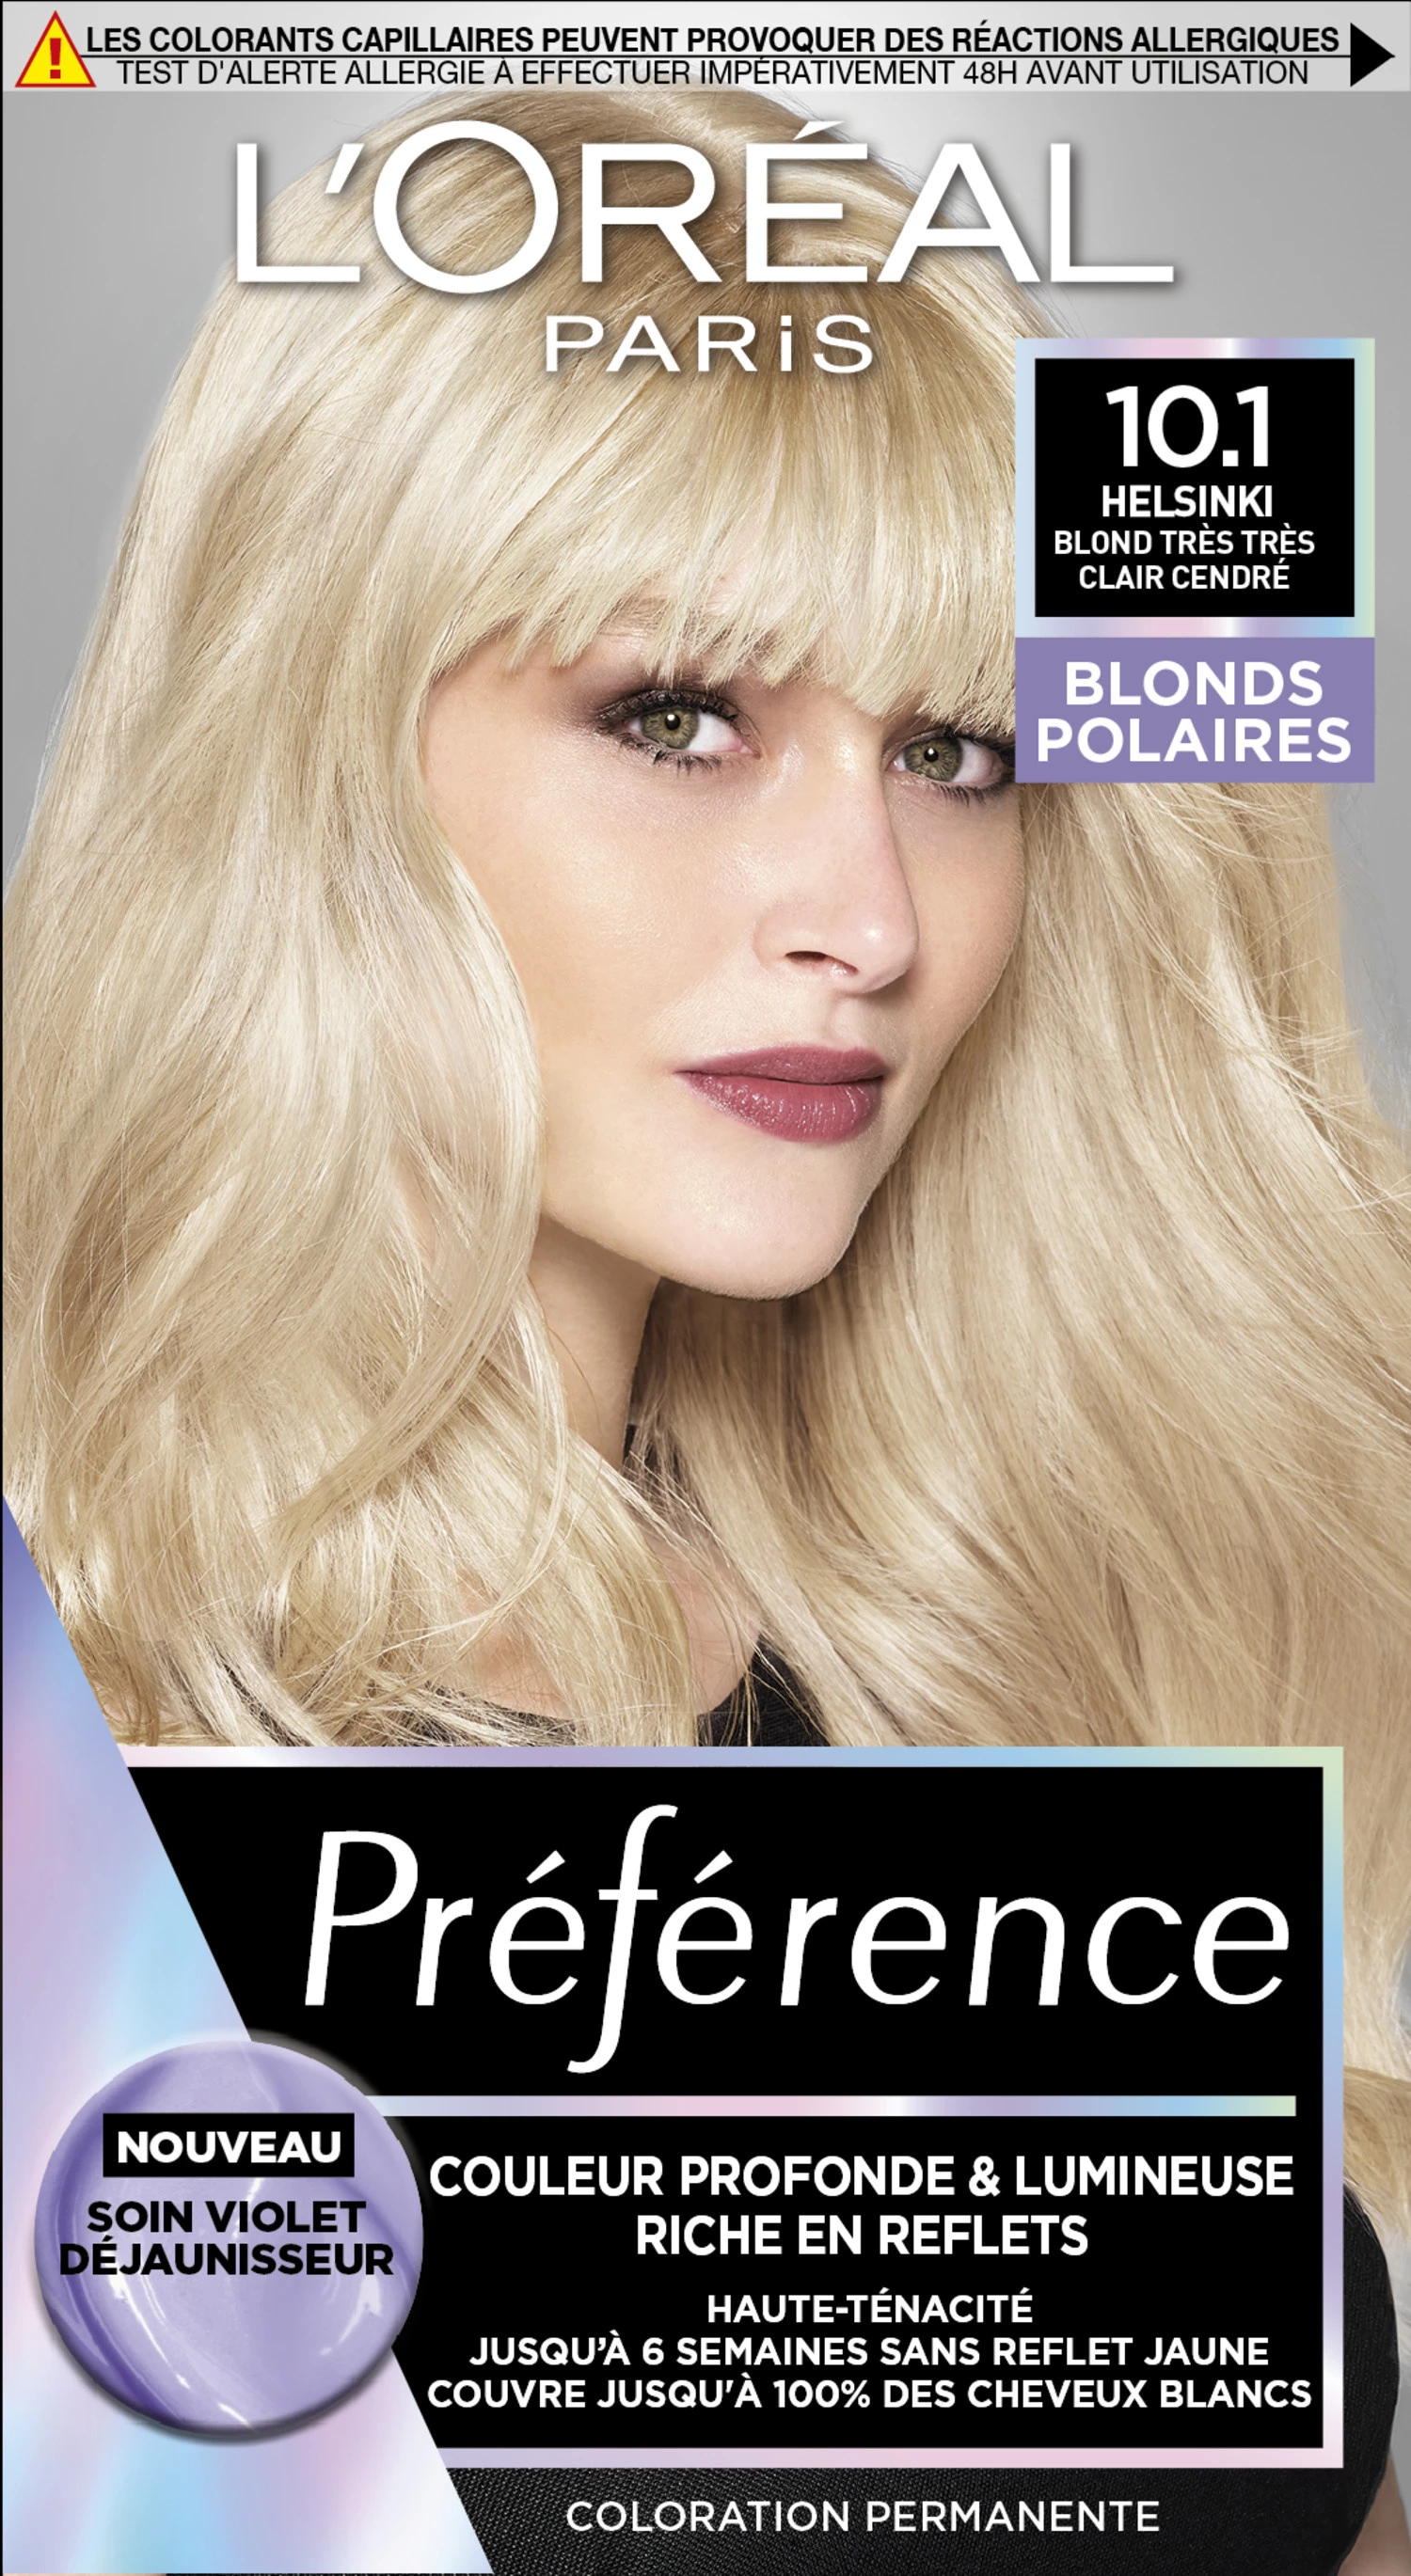 Prefer Cool Blondes - 10 1